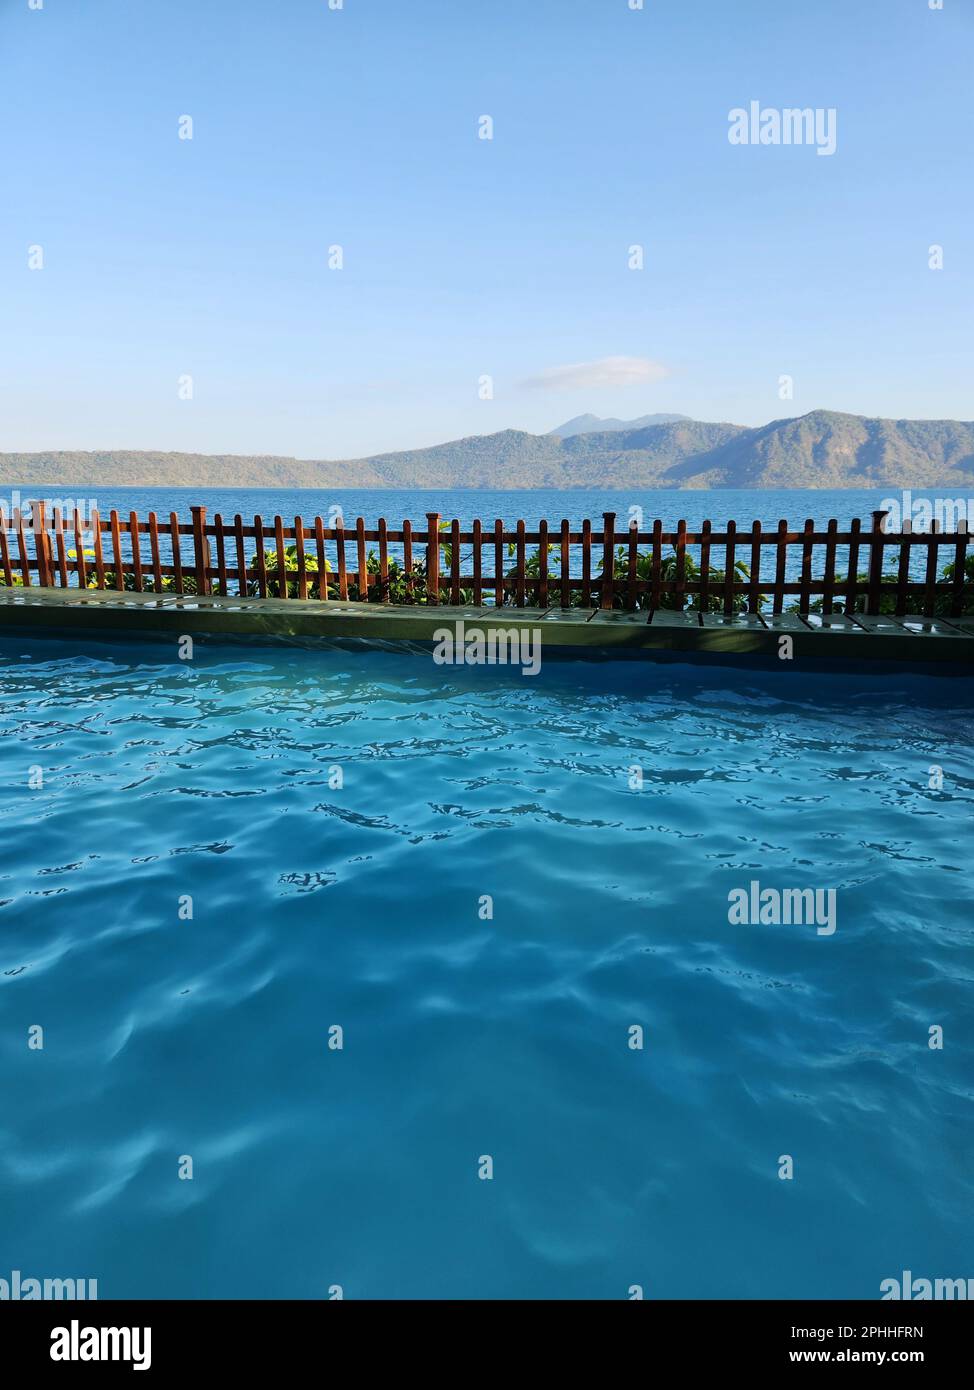 Reiseziel in Nicaragua. Warmer Pool im Hintergrund der Lagune Stockfoto